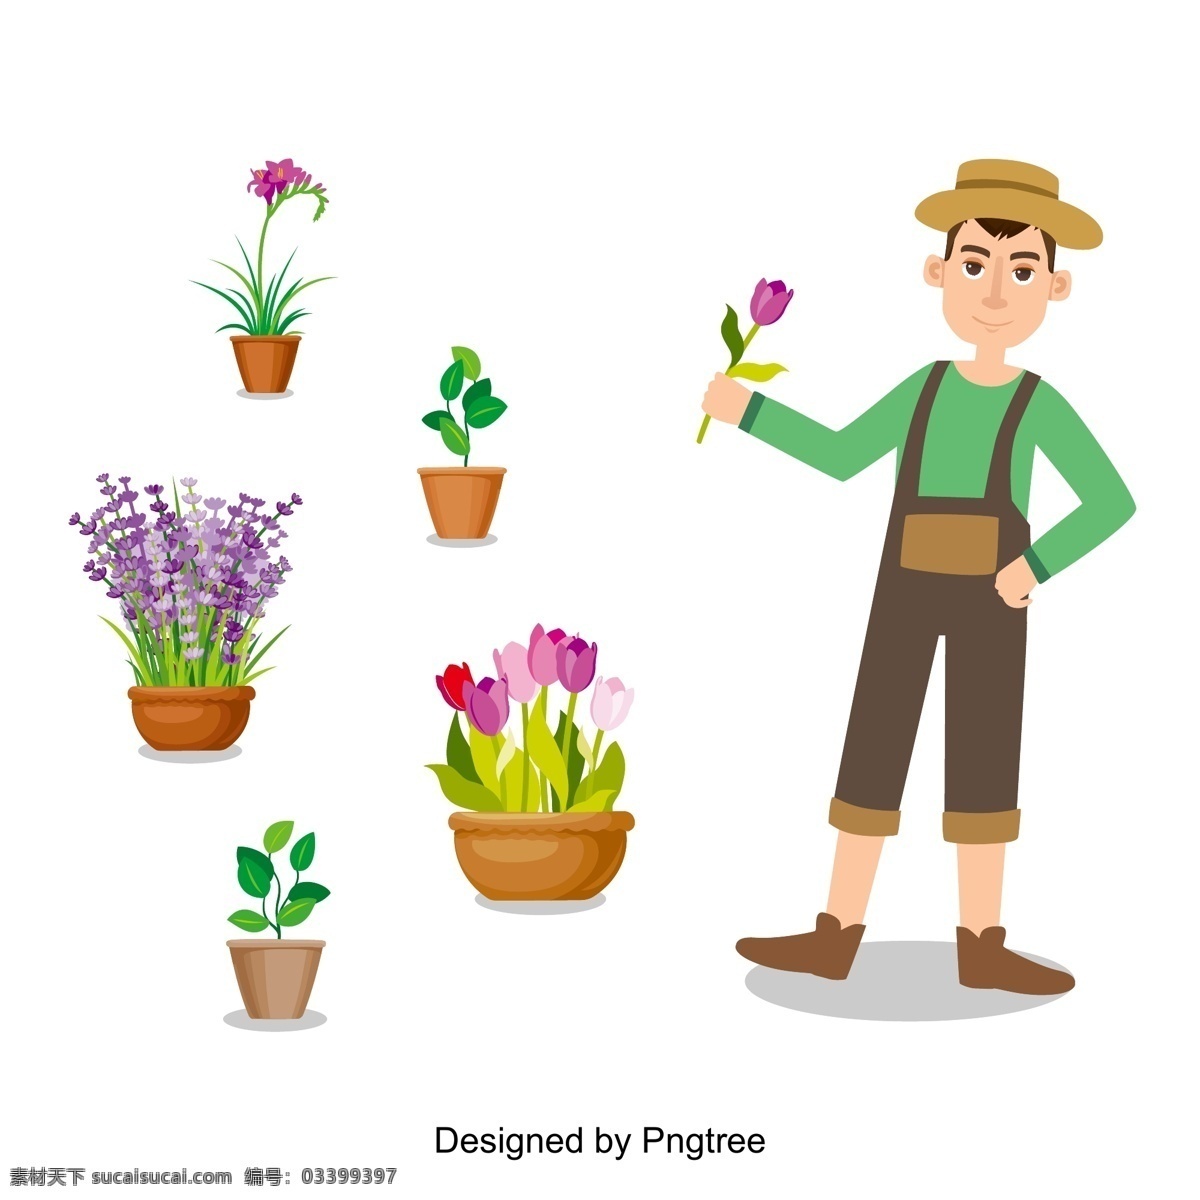 卡通 手绘 园丁 简单 风格 植物 创意 图形 画报 工人